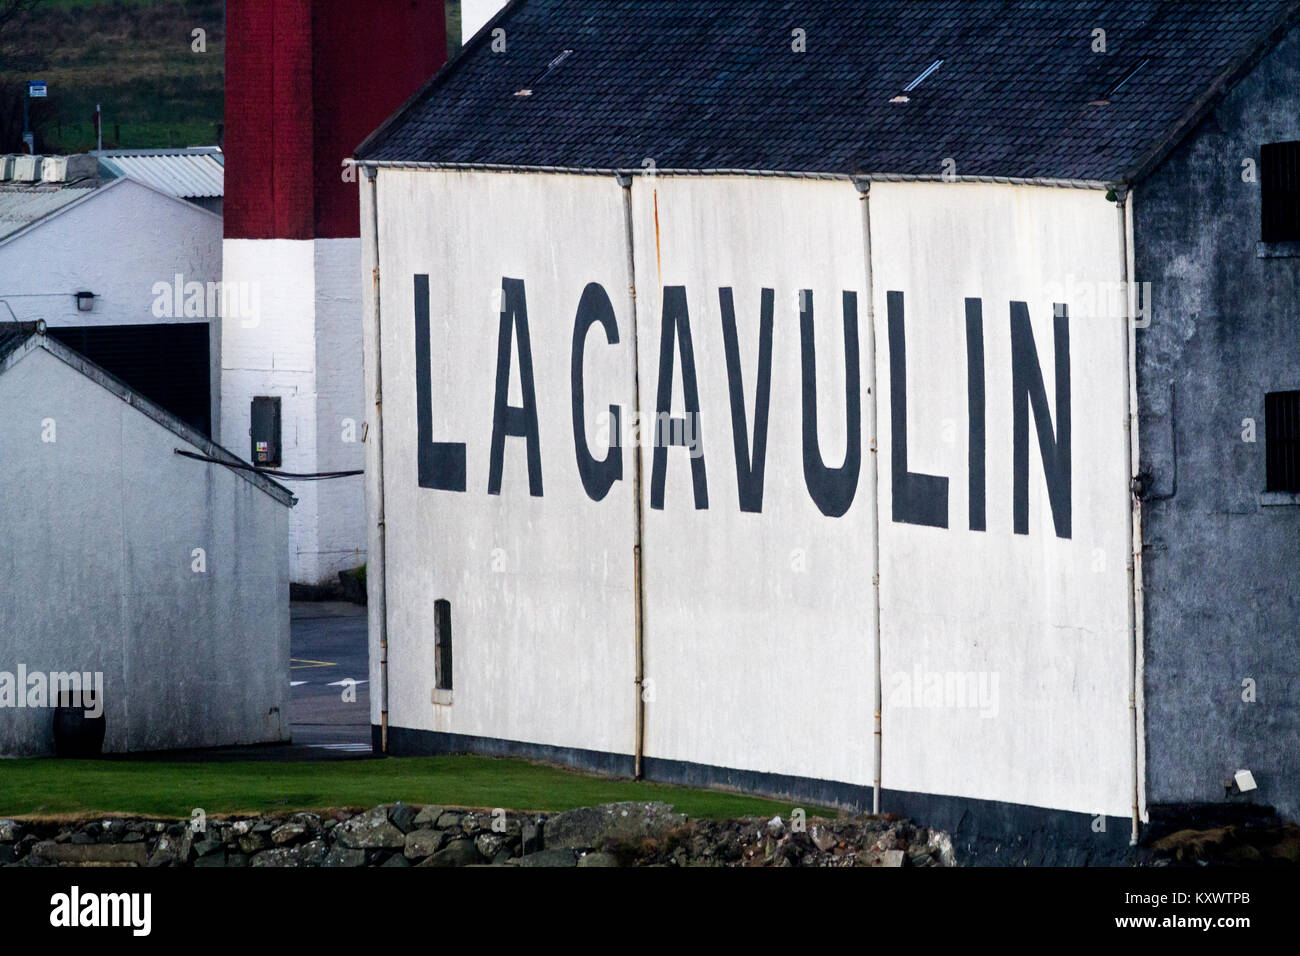 Close up al di fuori di Lagavulin distillerie di Whisky grandi lettere nere su pareti imbiancate, isola di Islay, Scozia Foto Stock